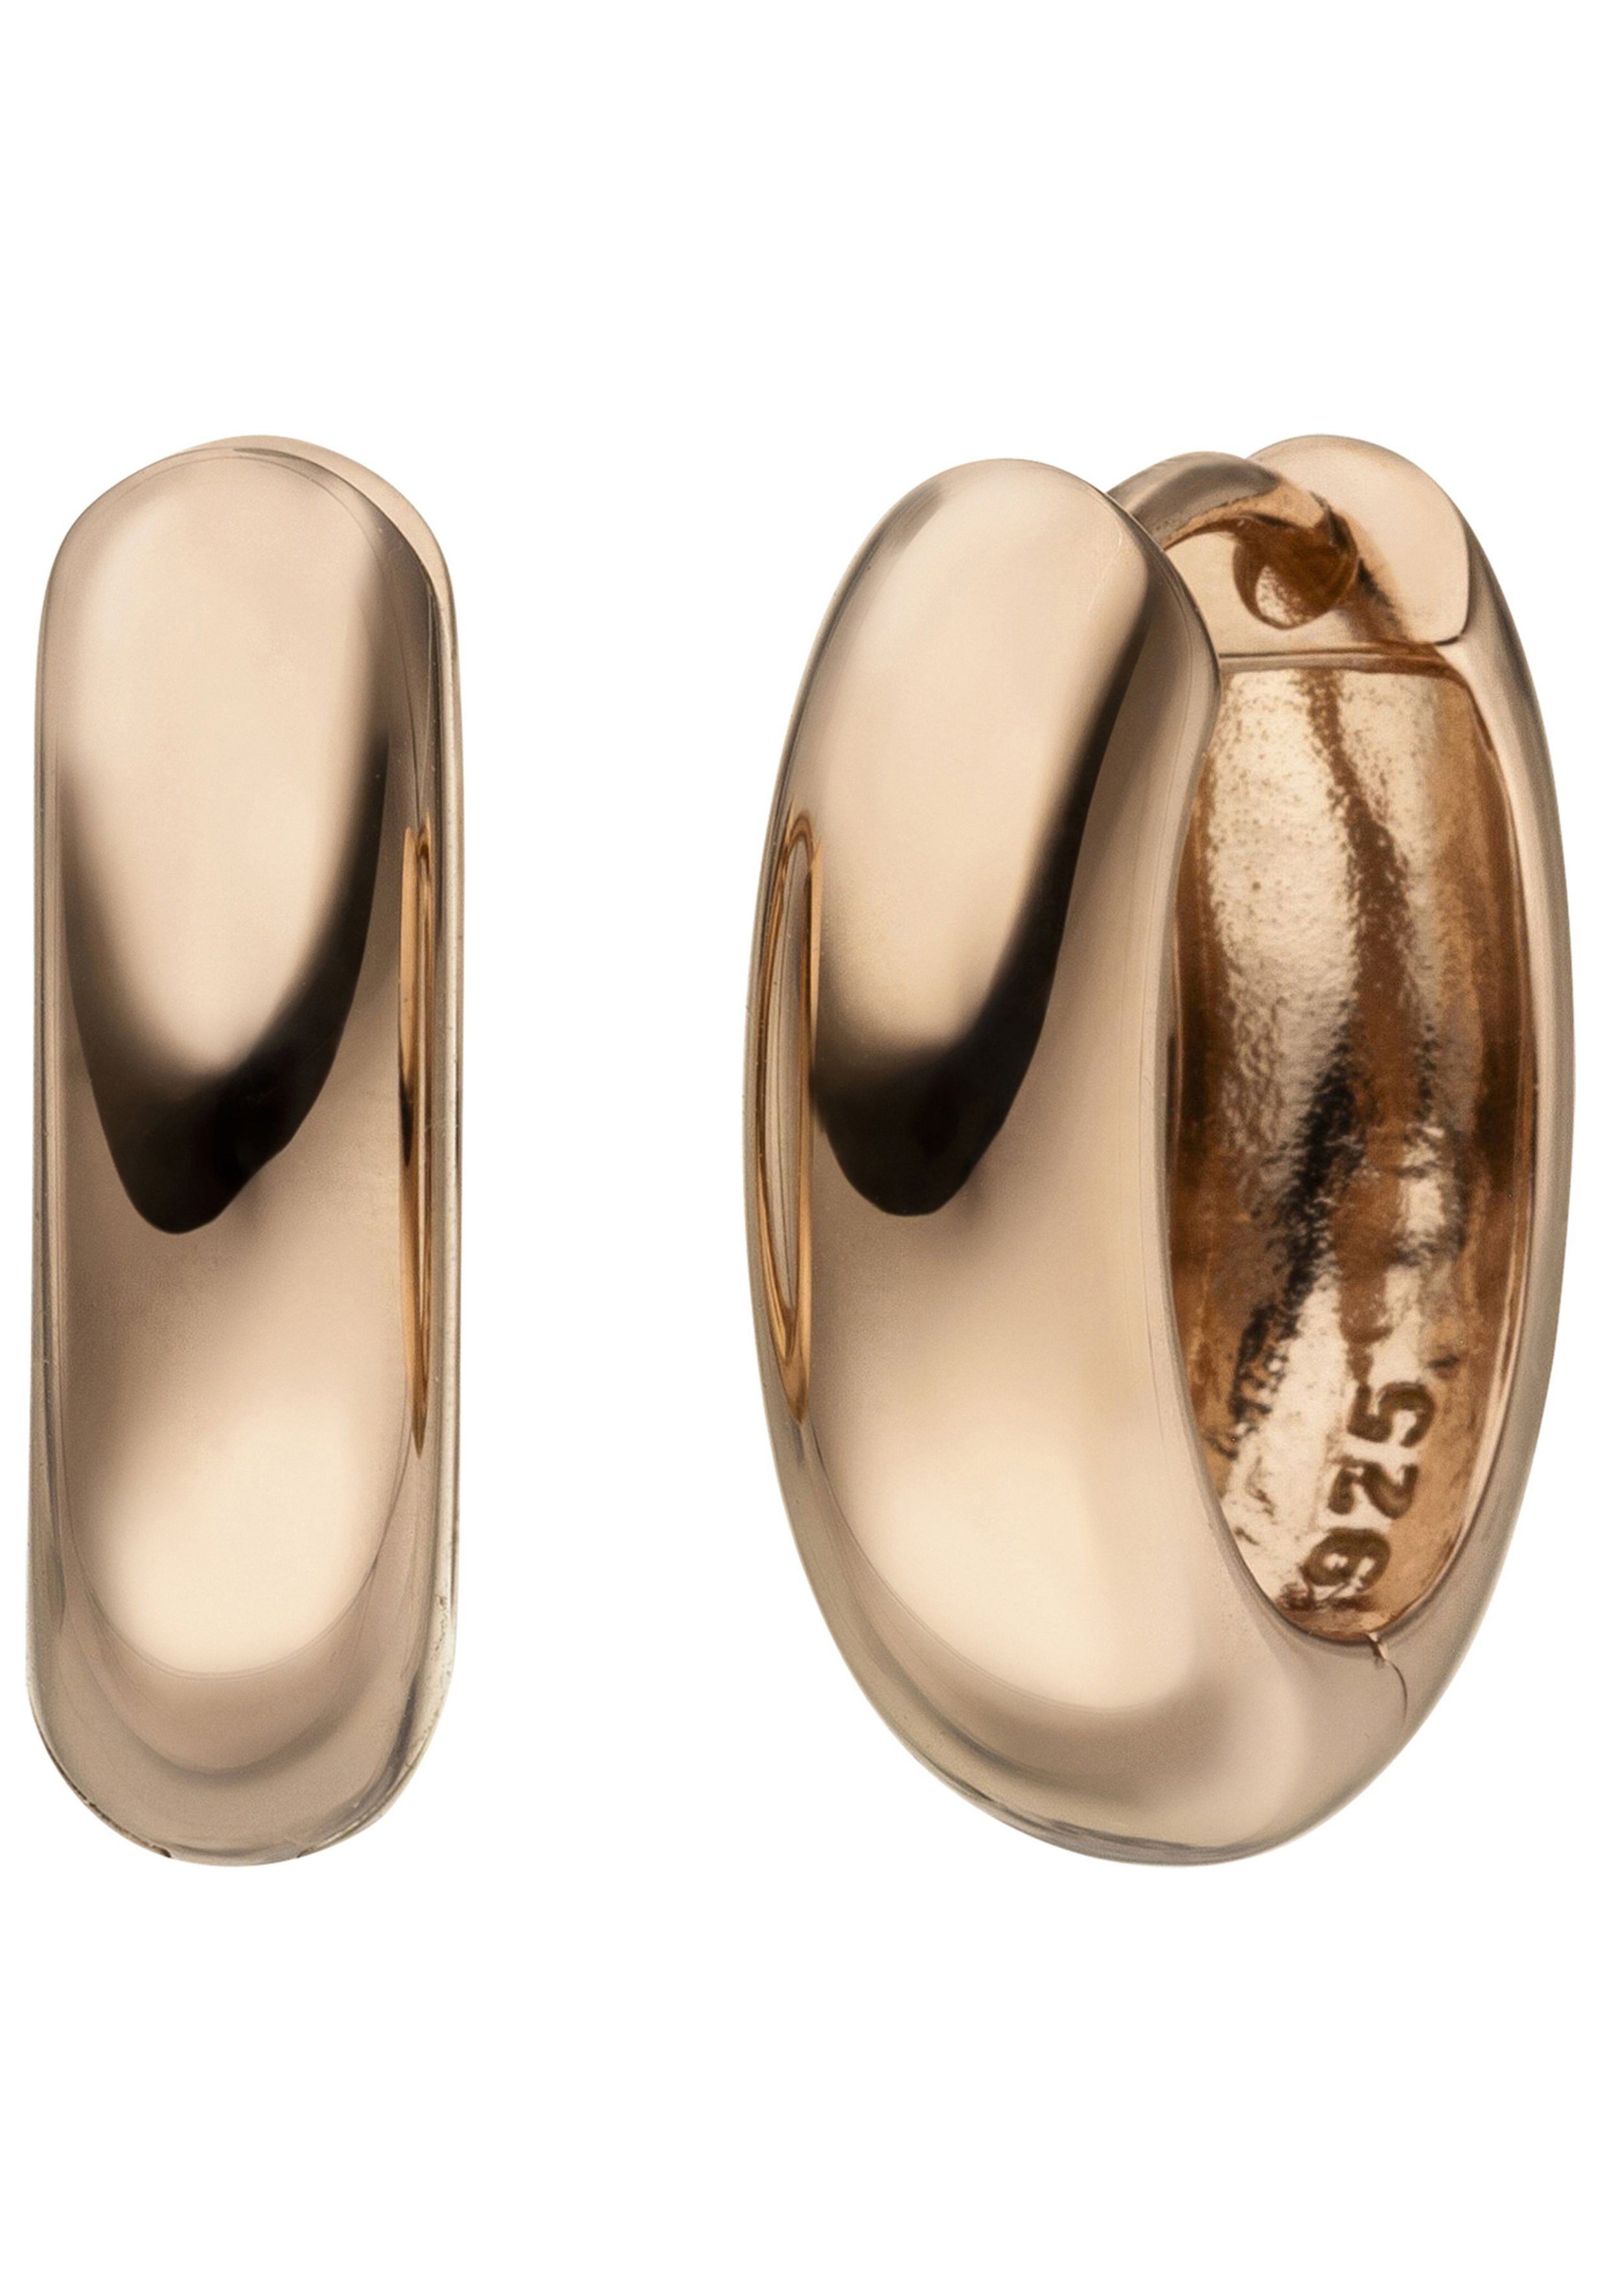 JOBO Paar Creolen, mm 925 16,2 ca. Silber 4,9 vergoldet, roségold Breite oval Höhe ca. mm